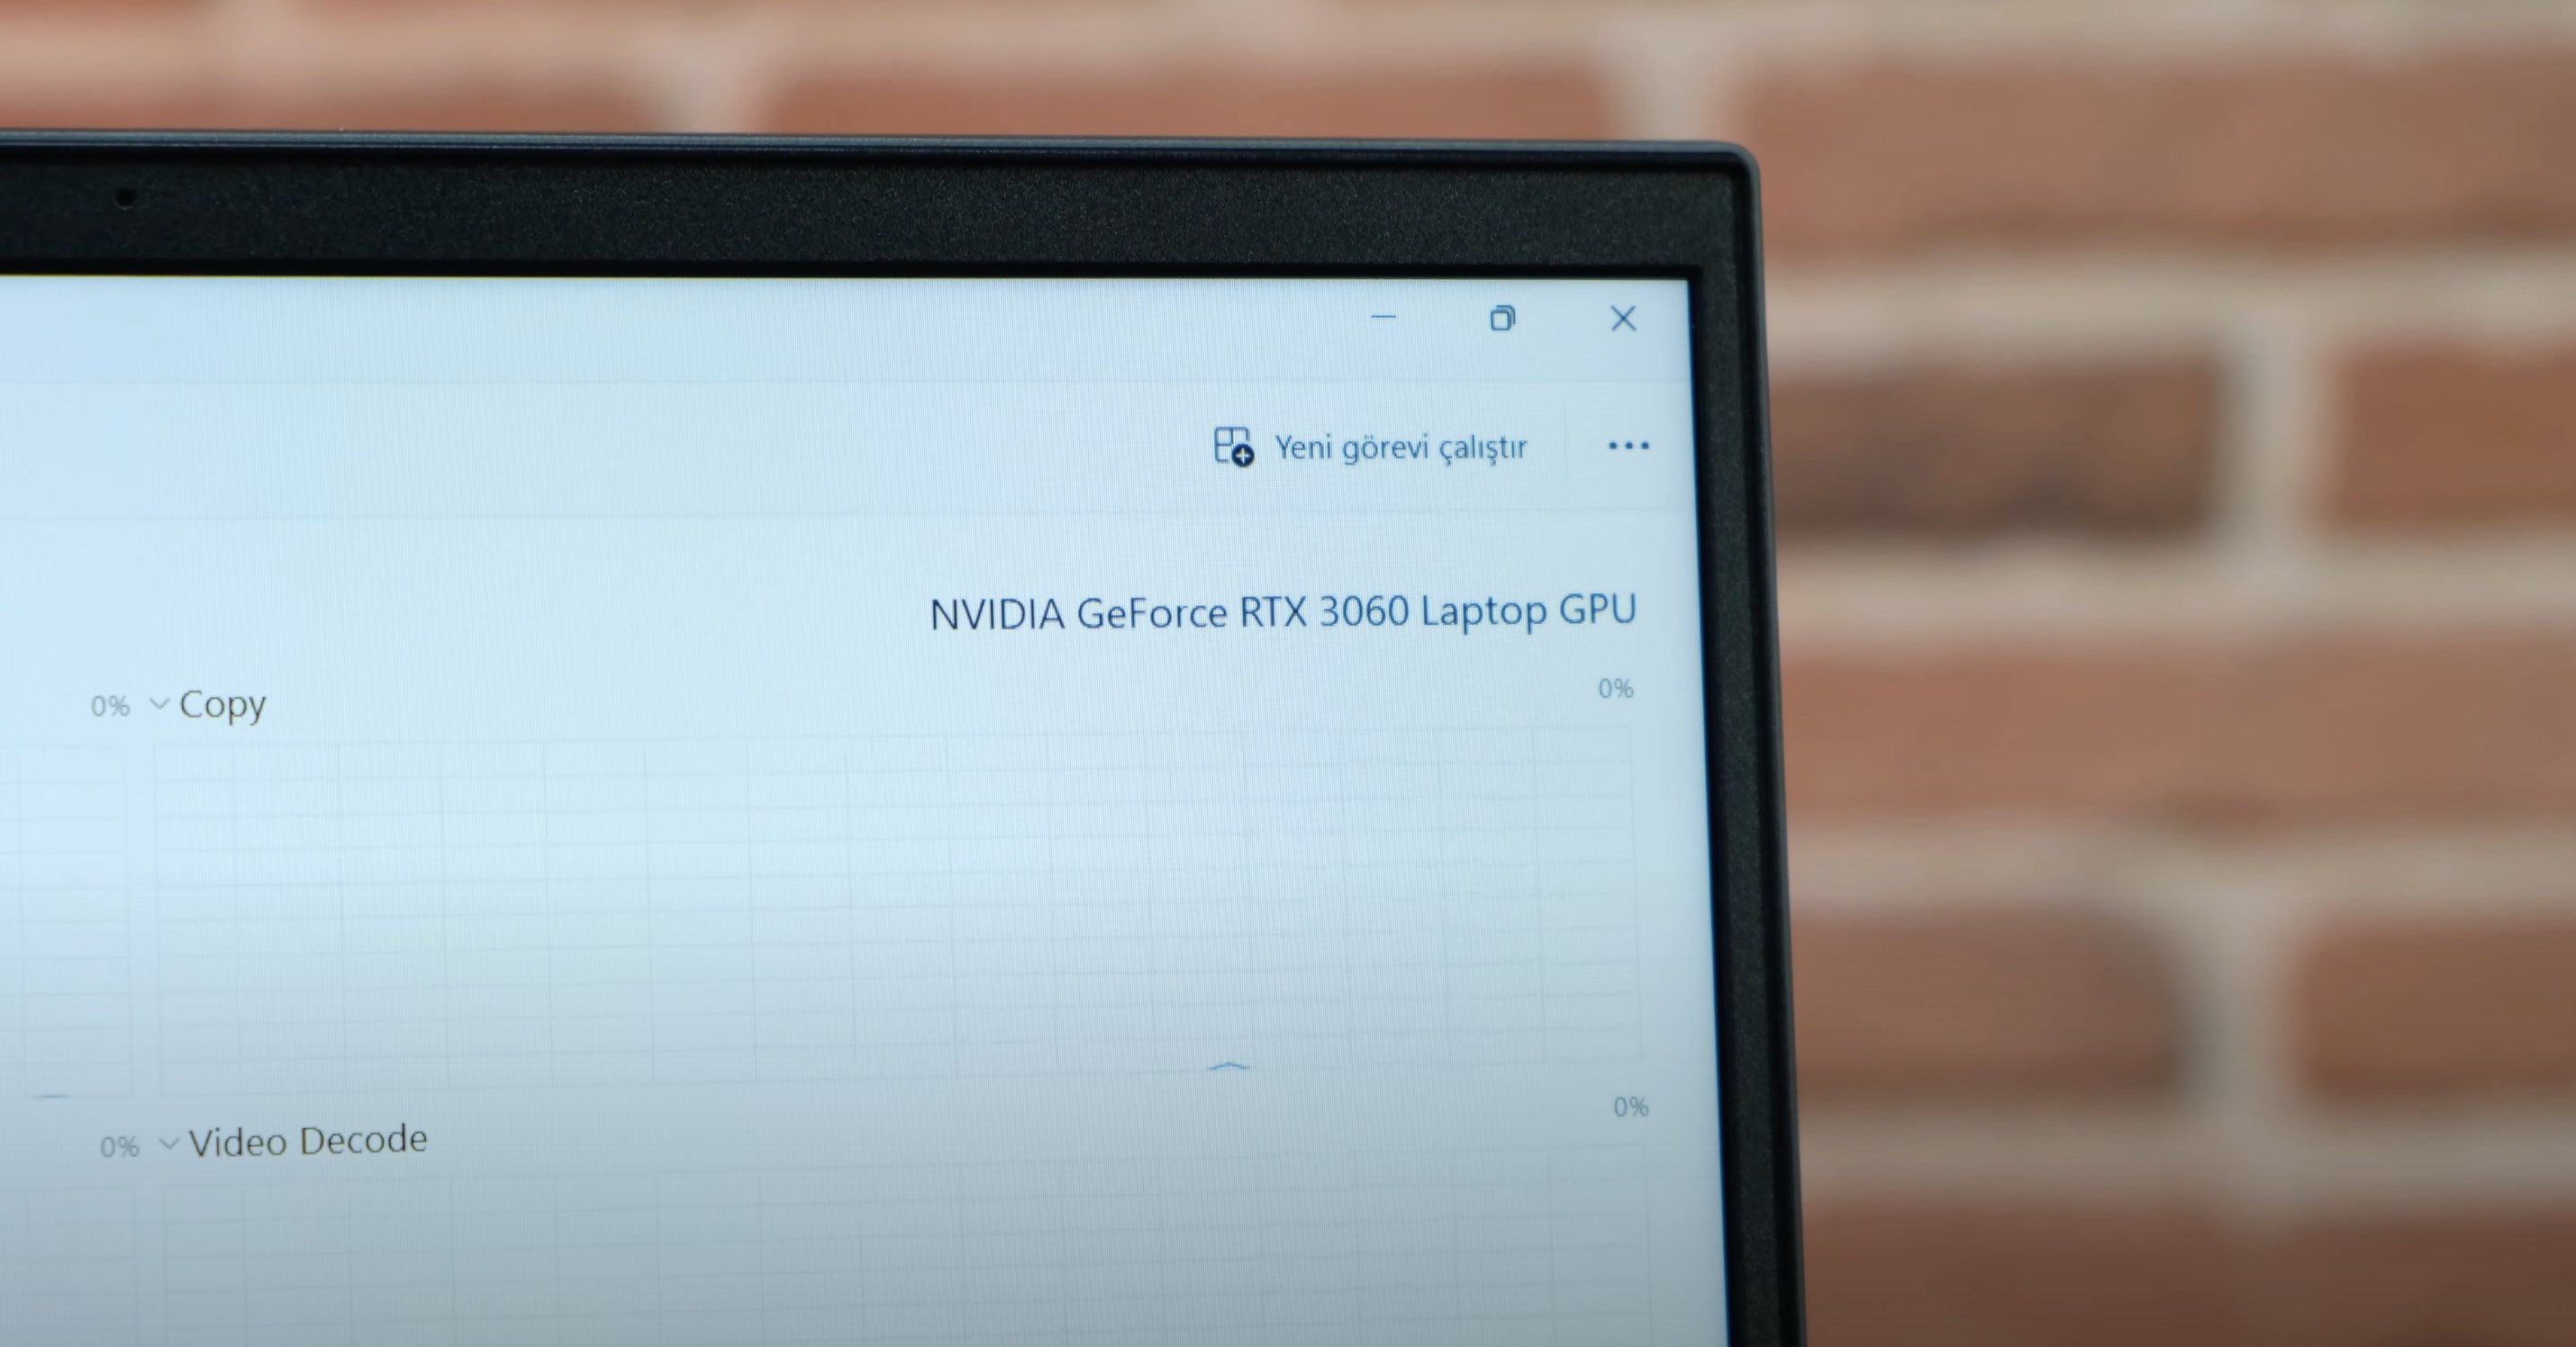 Casper Excalibur G870 detaylı inceleme - 12. nesil işlemcili!